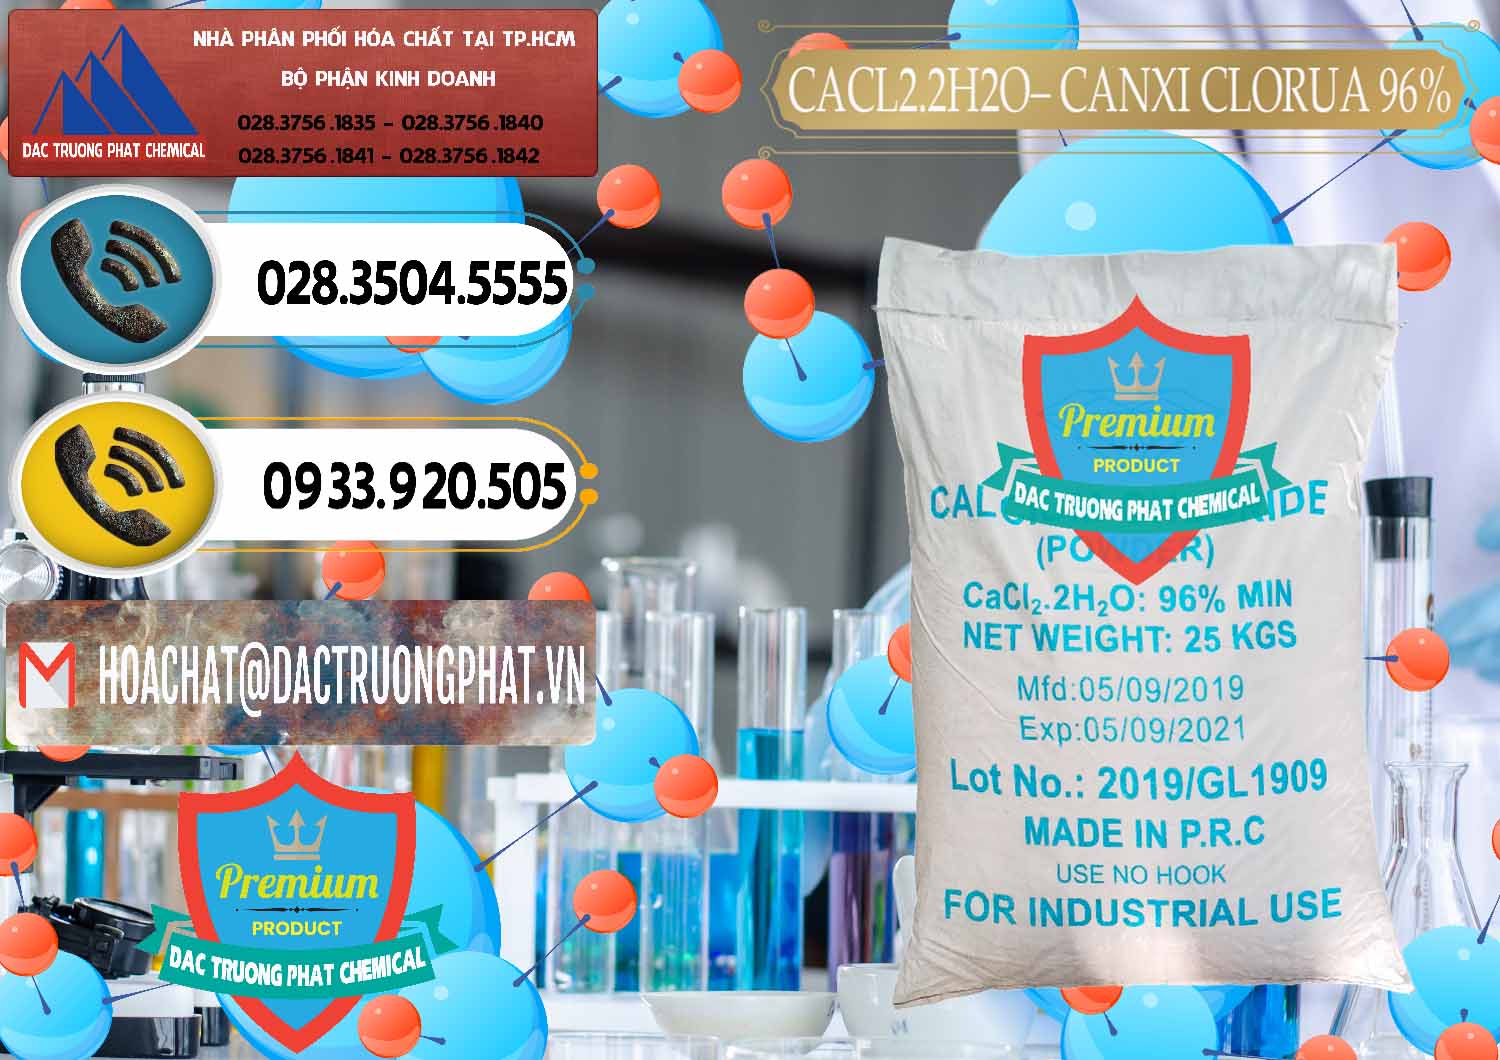 Chuyên bán ( cung ứng ) CaCl2 – Canxi Clorua 96% Logo Kim Cương Trung Quốc China - 0040 - Công ty cung cấp và phân phối hóa chất tại TP.HCM - hoachatdetnhuom.vn